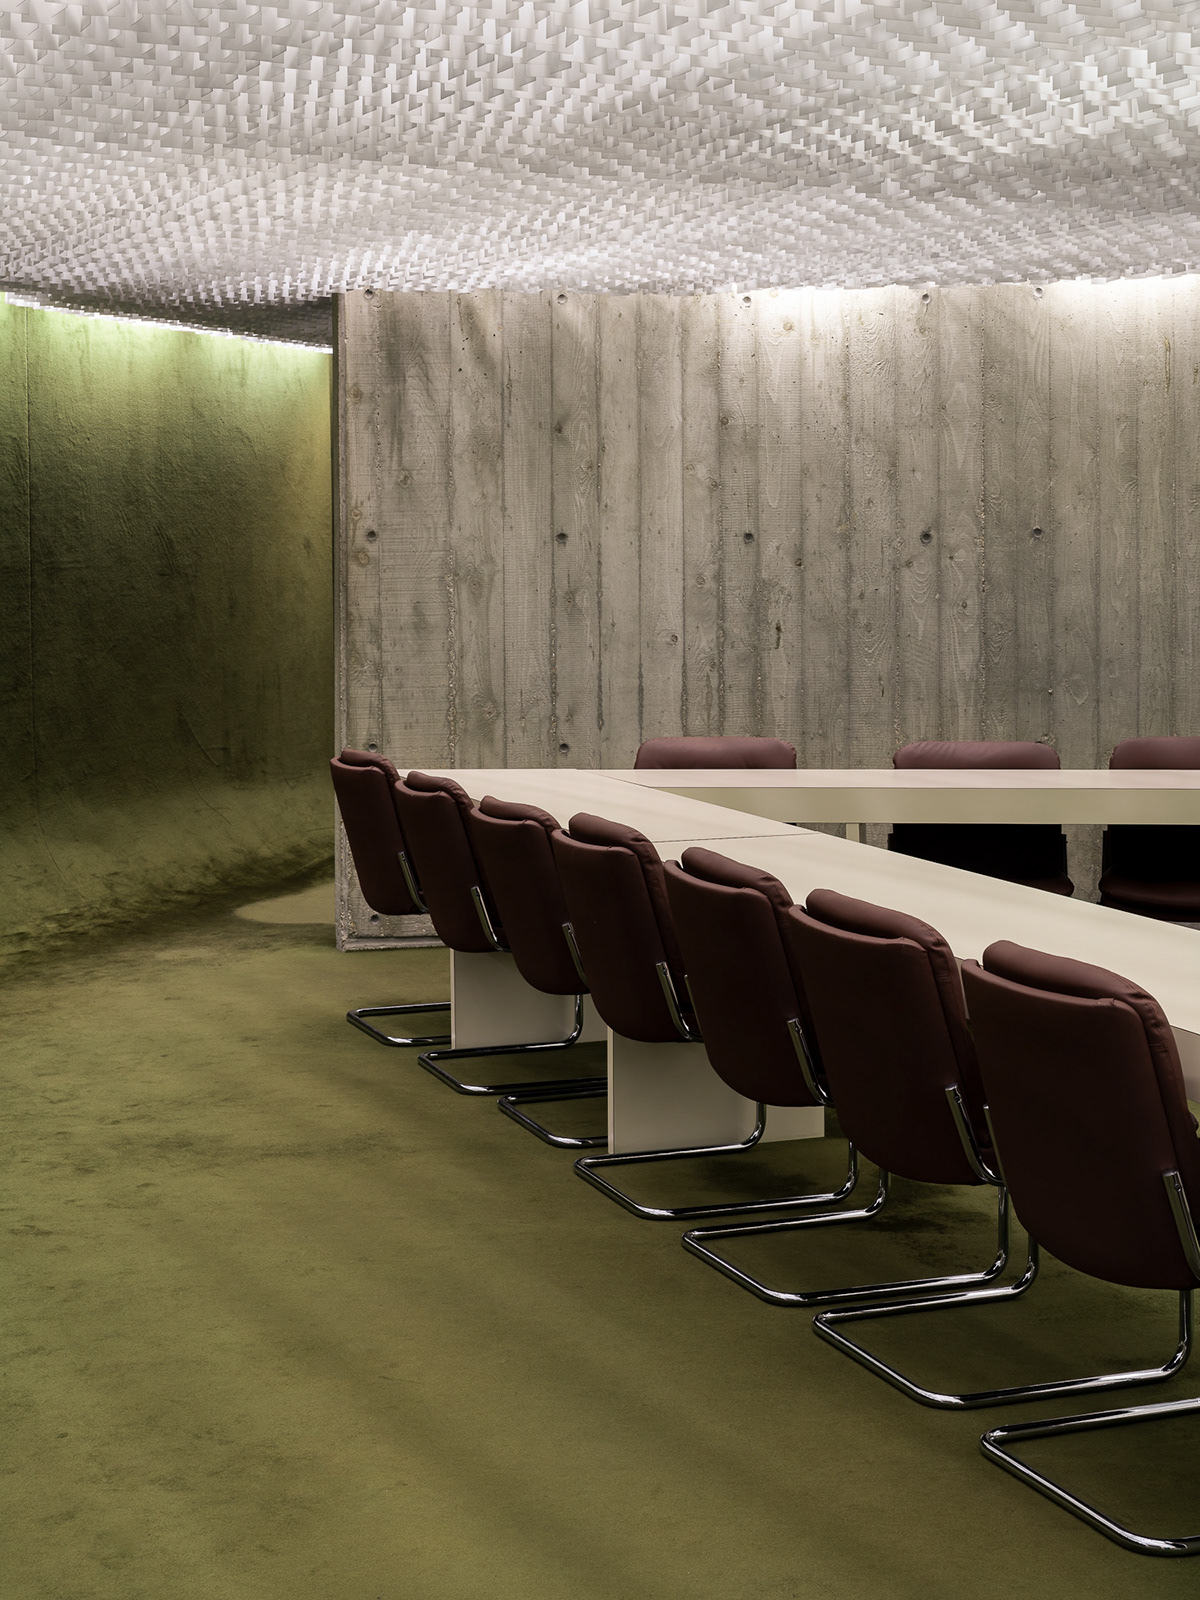 Oscar Niemeyer modernist architecture modernism architecture concrete architecture Interior Photography furniture